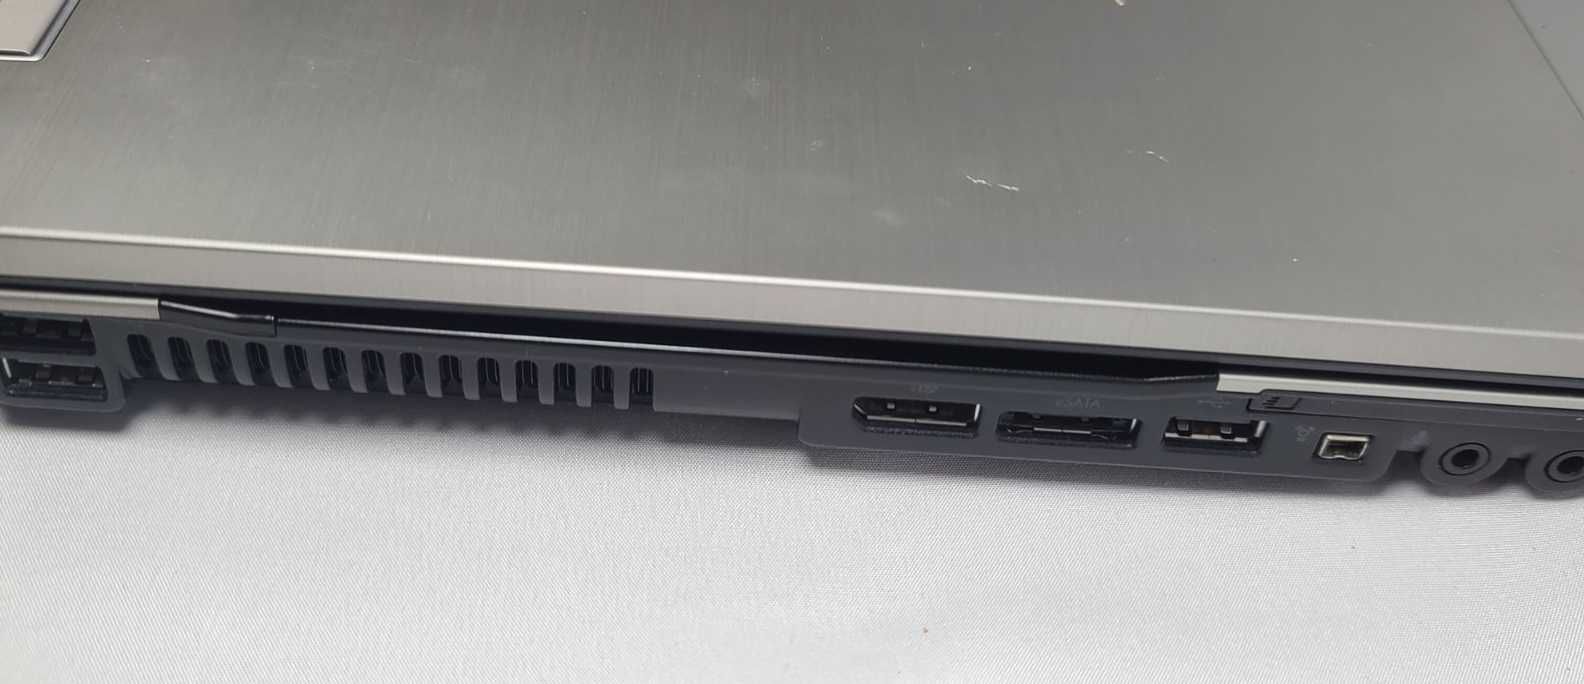 Игровой Ноутбук HP Elitebook 8540p 15.6" Intel i7 720QM 8GB SSD120GB